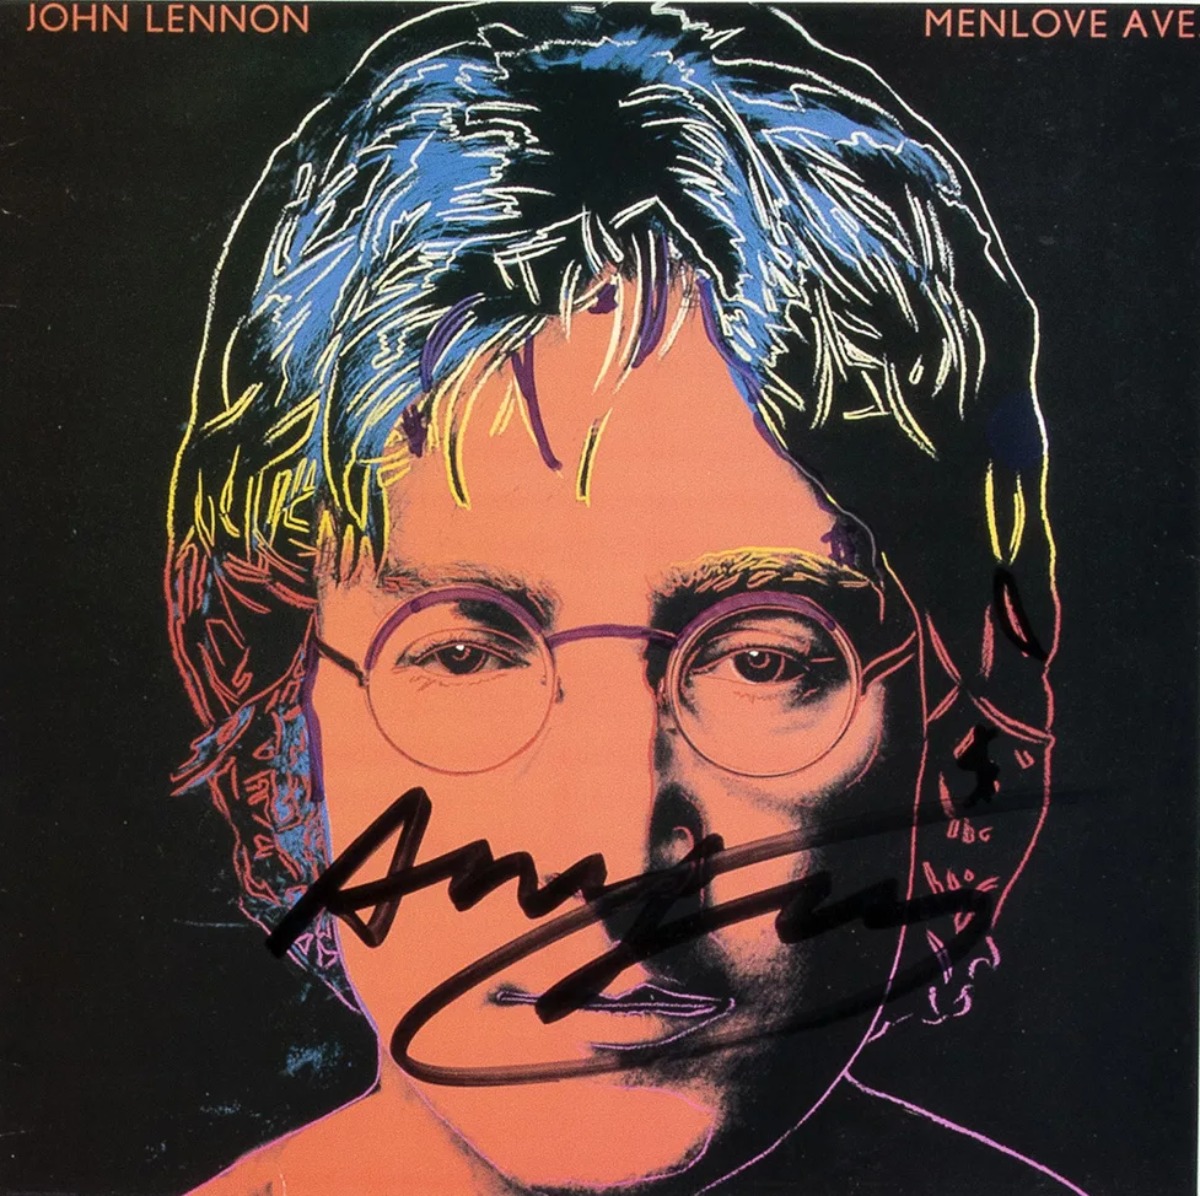 Das Cover des posthumen Albums Menlove Ave. von John Lennon. signiert von Warhol.